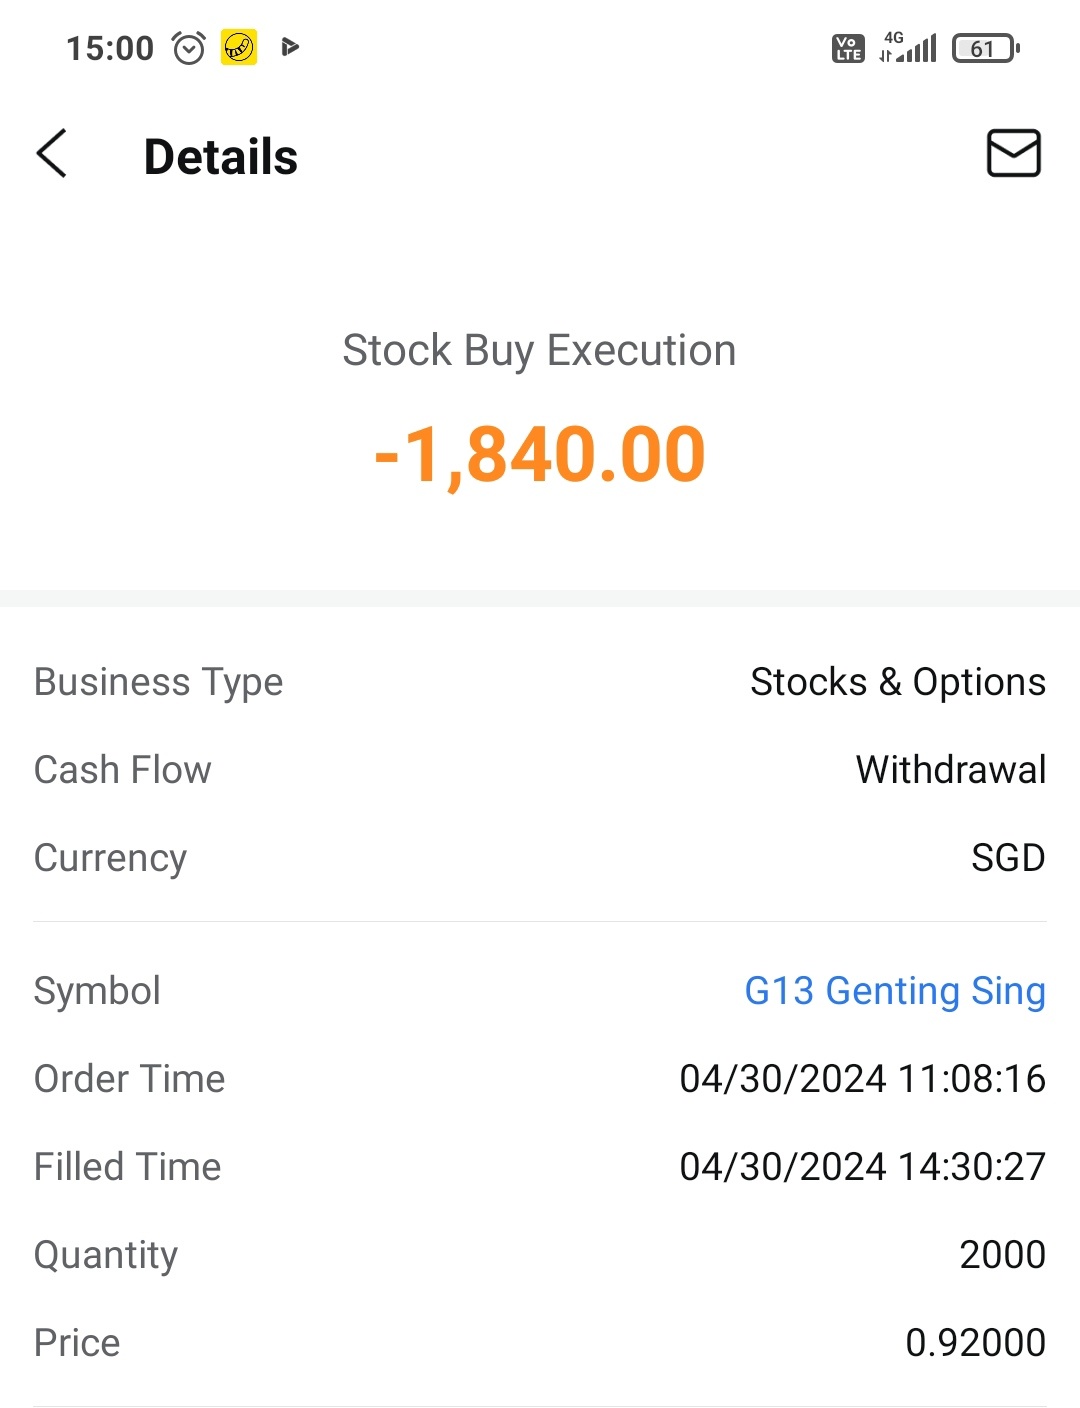 $雲頂新加坡 (G13.SG)$ 你好如果我在 4 月 30 日購買，我可以獲得股息嗎？